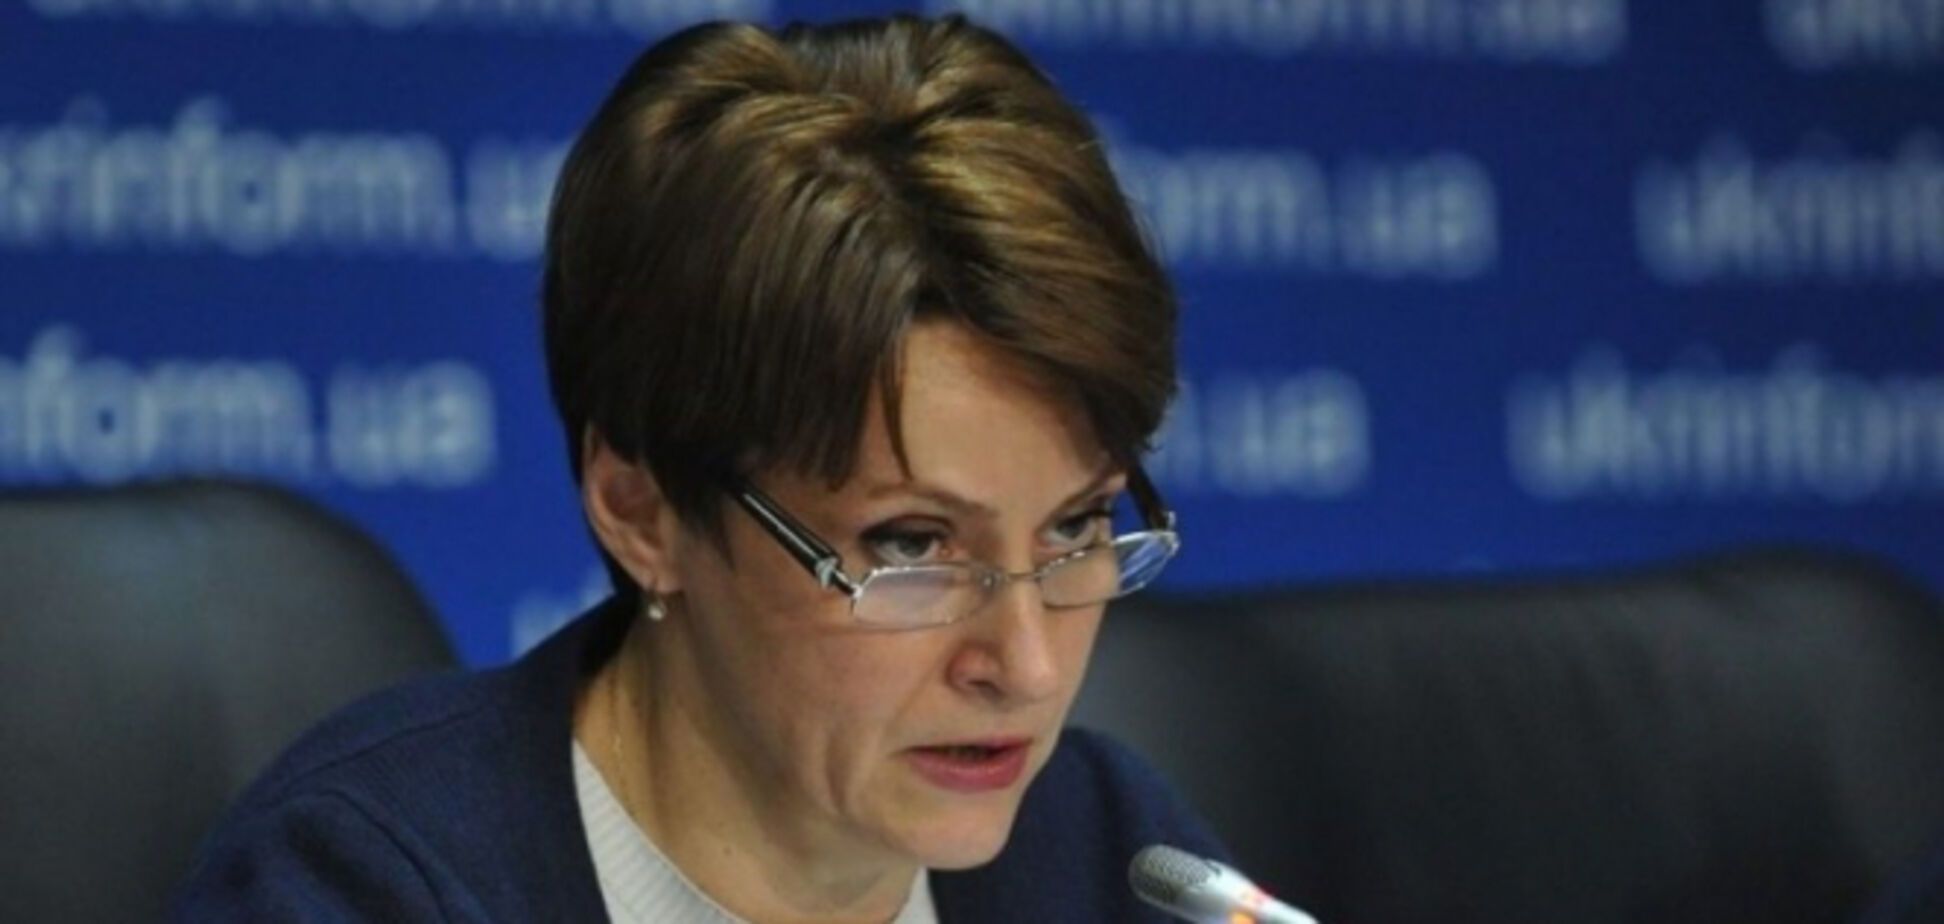 Міністр фінансів Данилюк скандалить, щоб не платити податки - Южаніна